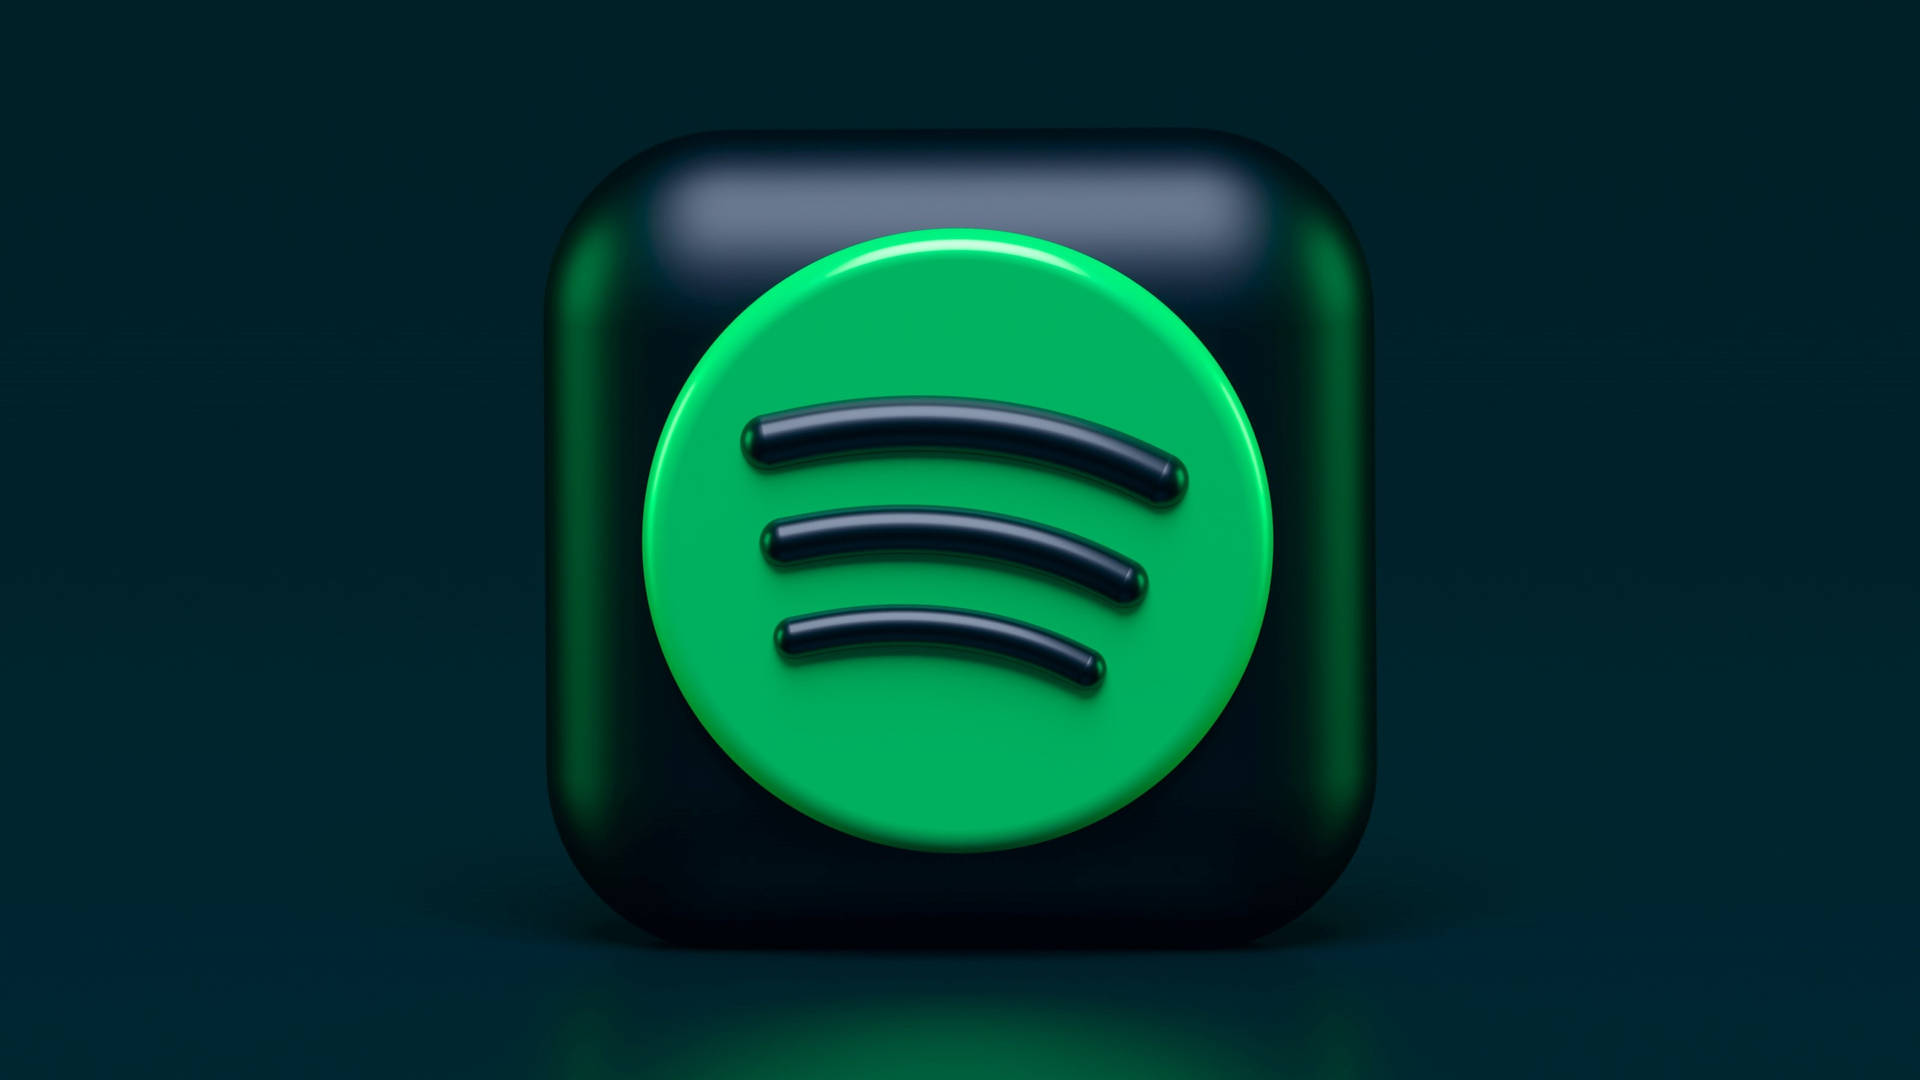 Free Spotify Wallpaper Downloads, Spotify Wallpaper for FREE